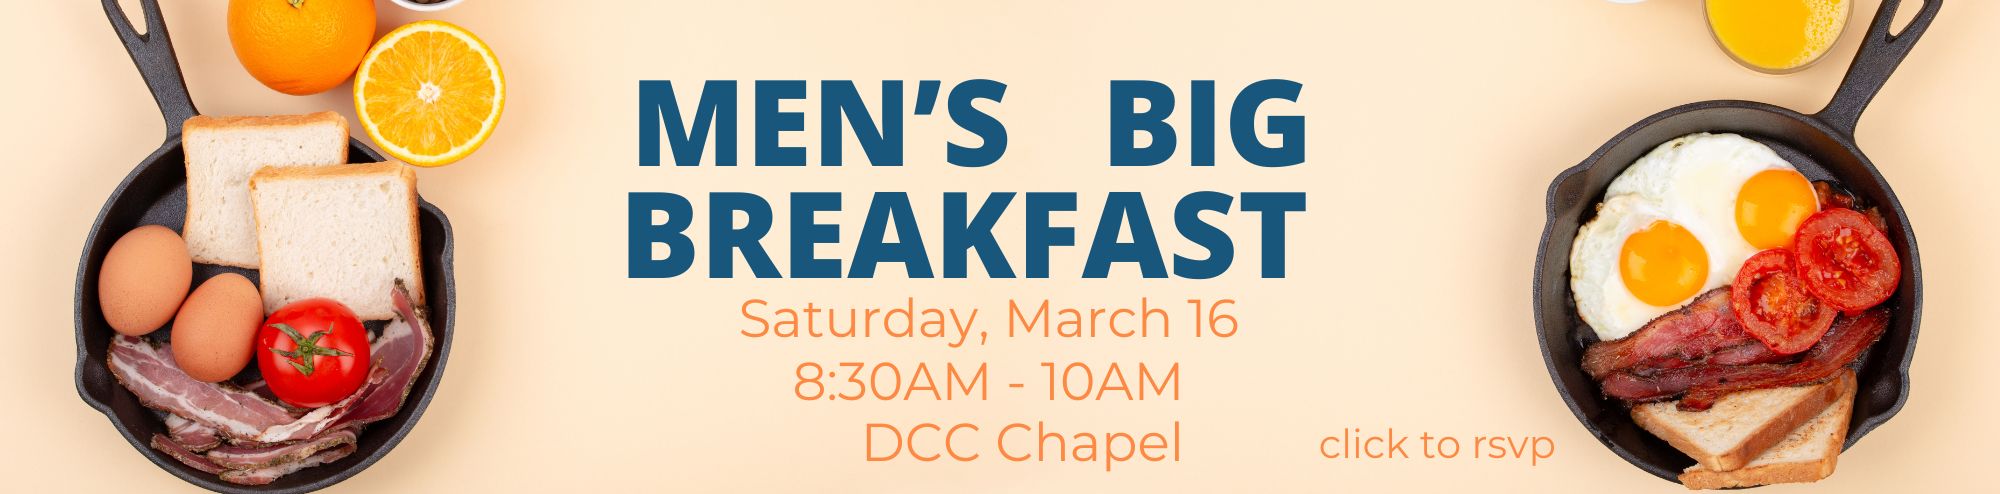 Men's Big Breakfast